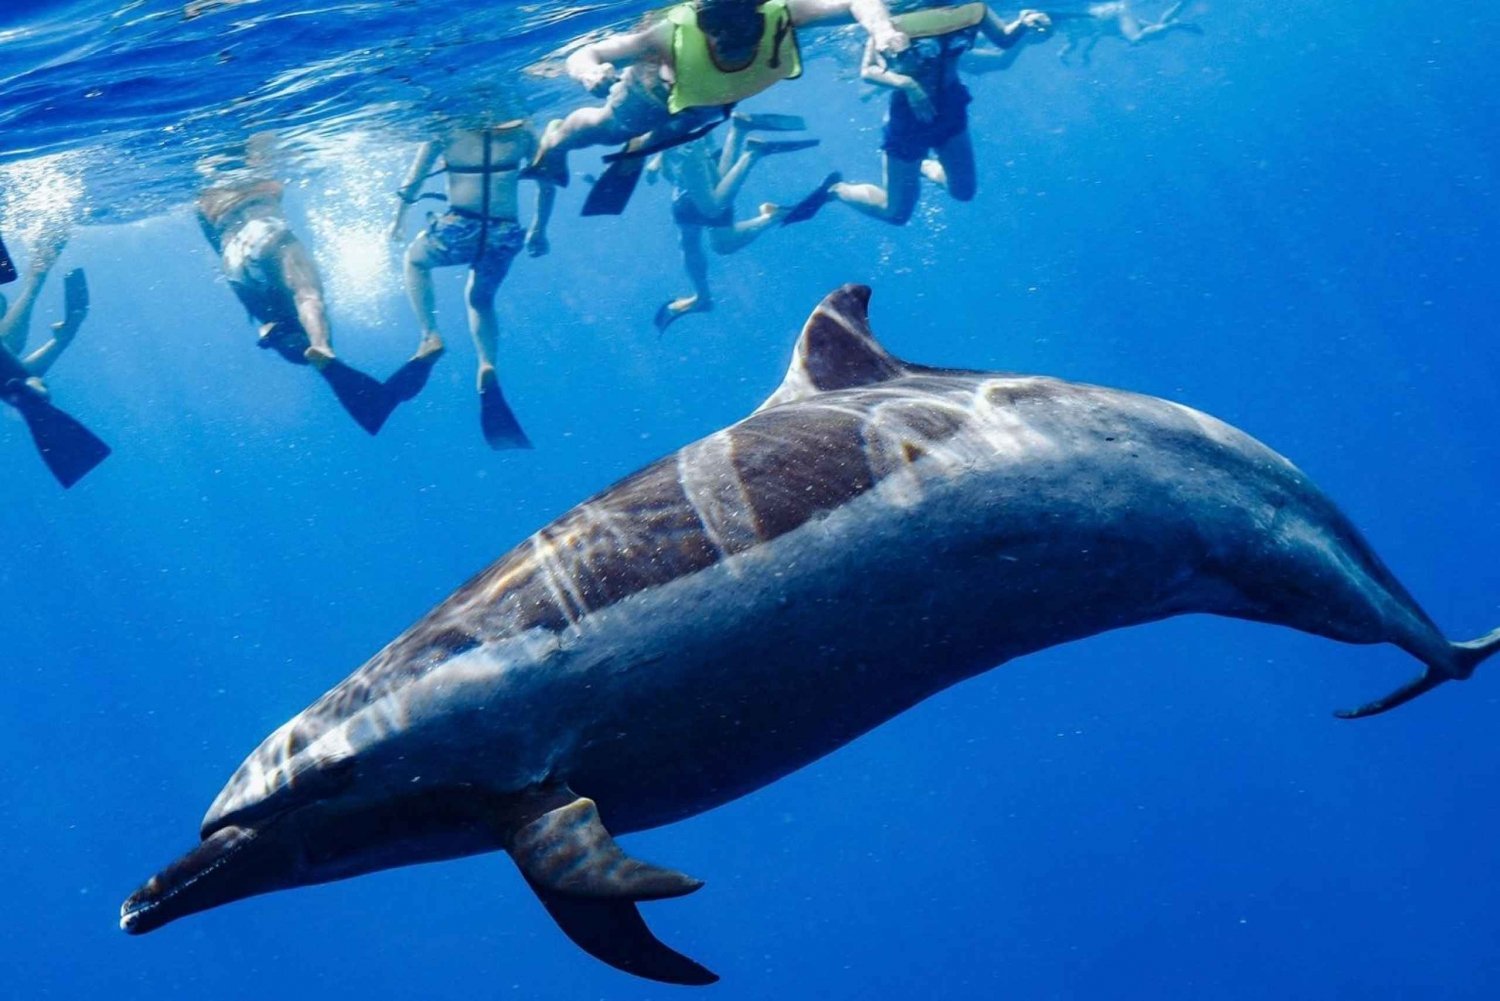 Oahu: Nado con Delfines, Excursión de Snorkel con Tortugas y Tobogán Acuático